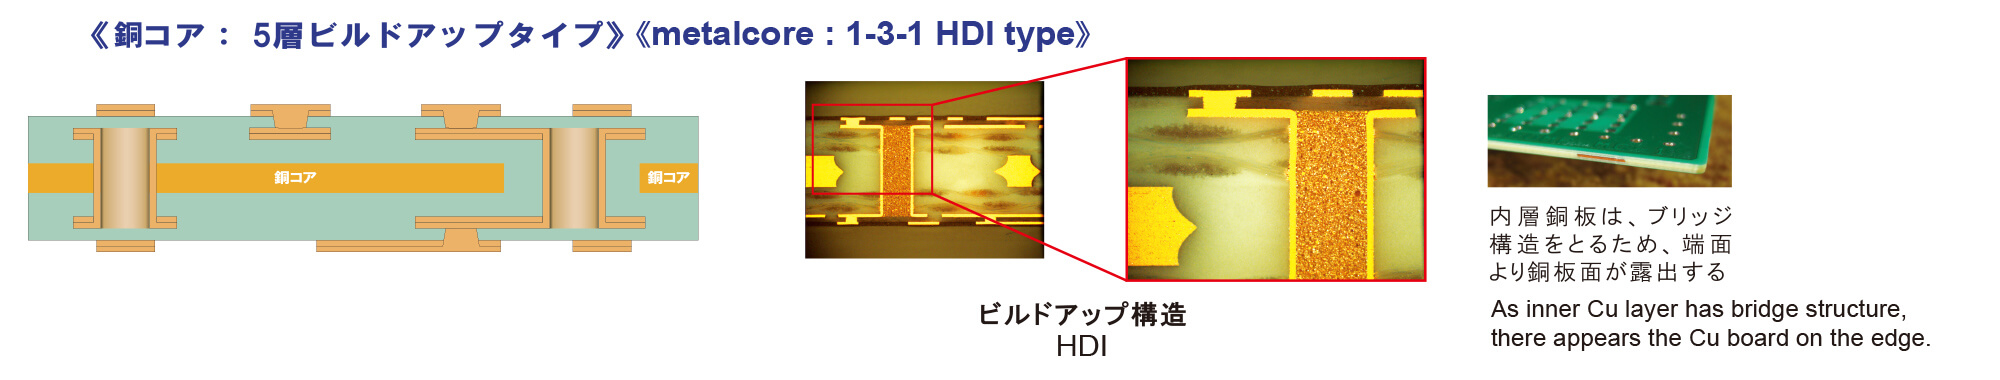 metal core: 1-3-1 HDI type